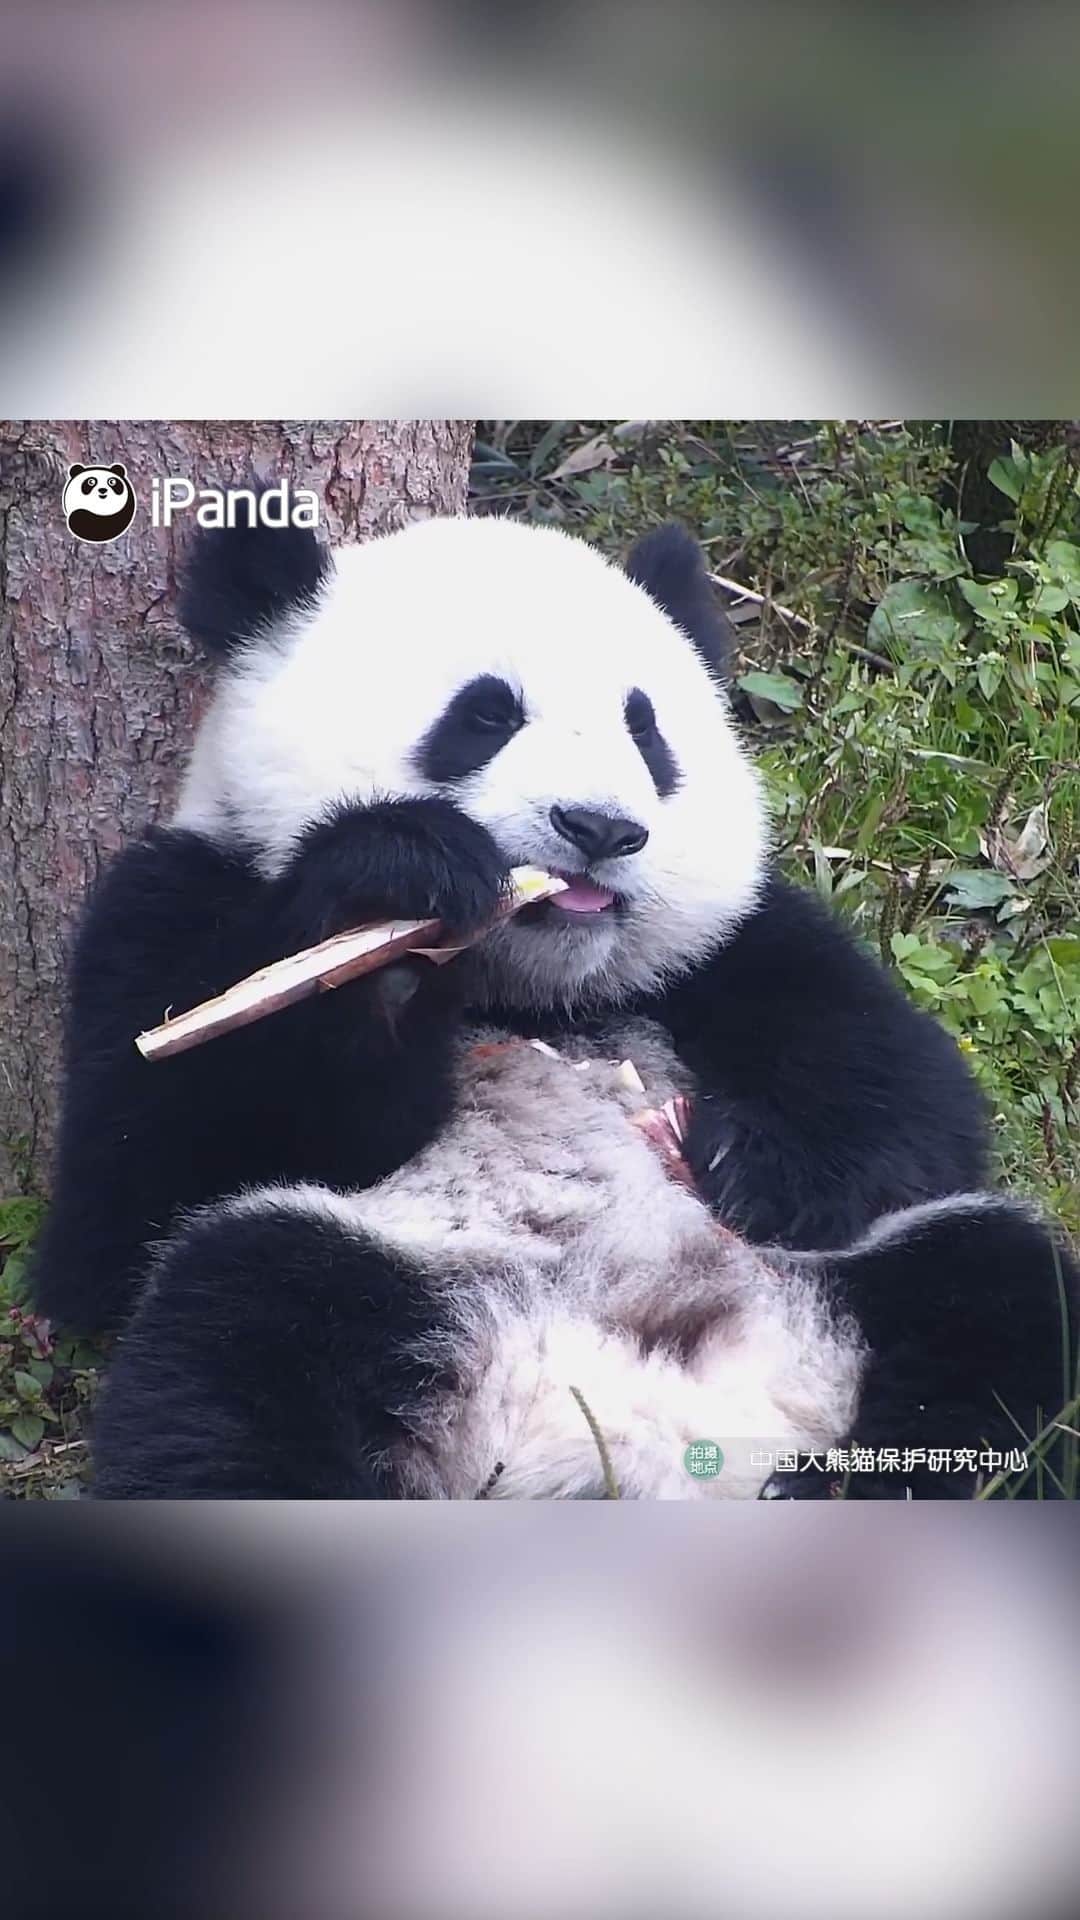 iPandaのインスタグラム：「Panda baby is waiting for you to gently stroke its head! 🐼 🐼 🐼 #Panda #iPanda #Cute #HiPanda #CCRCGP #PandaMoment #BestJobInTheWorld  For more panda information, please check out: https://en.ipanda.com」